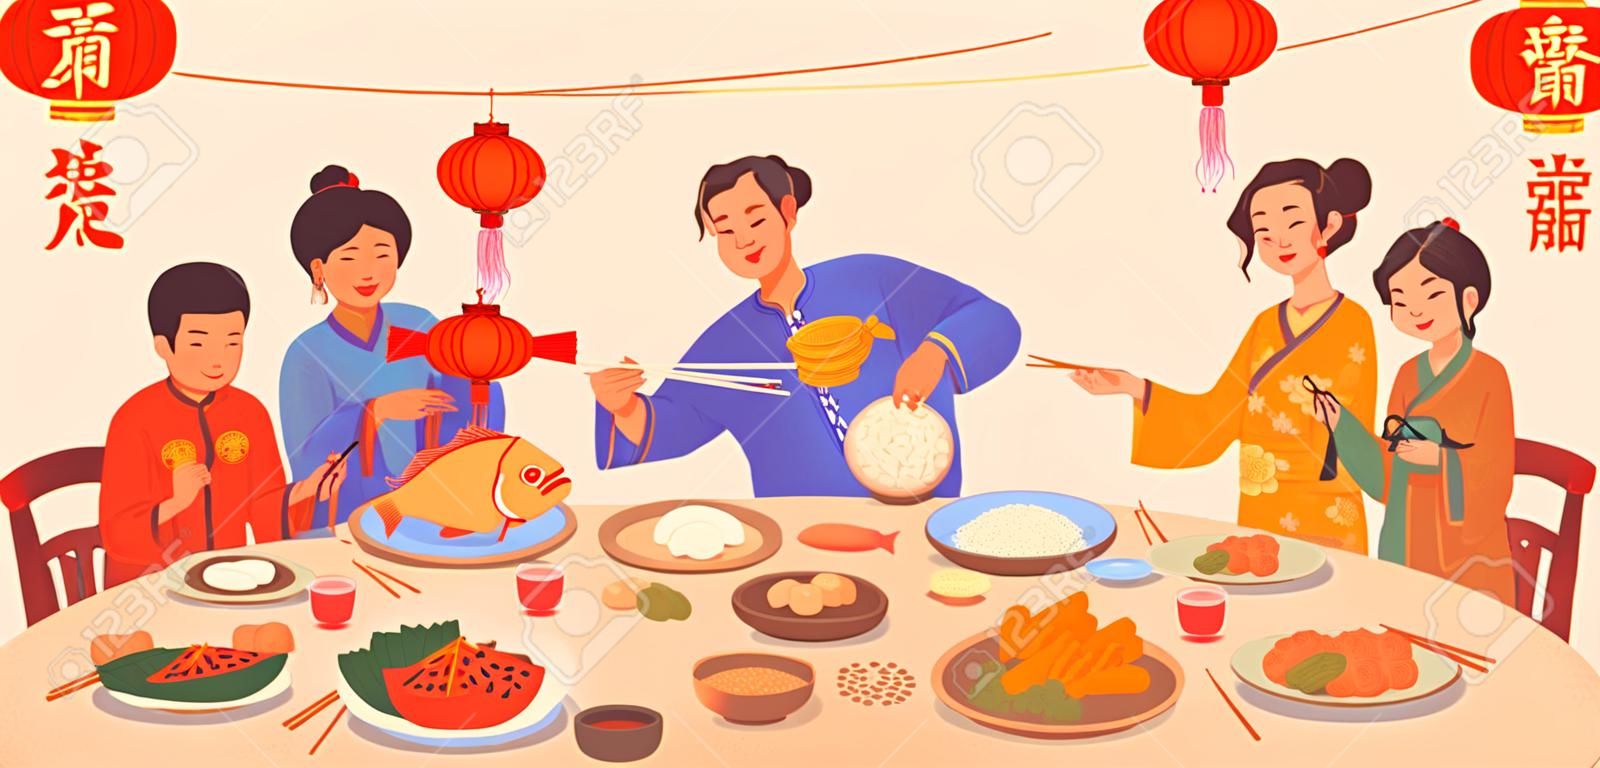 Traduzione del testo del capodanno cinese, cena di gala con cibo sui piatti e mani di persone che tengono le bacchette, decorazione di lanterne rosse. Piatti della cucina tradizionale cinese, pesce e riso, gnocchi, verdure